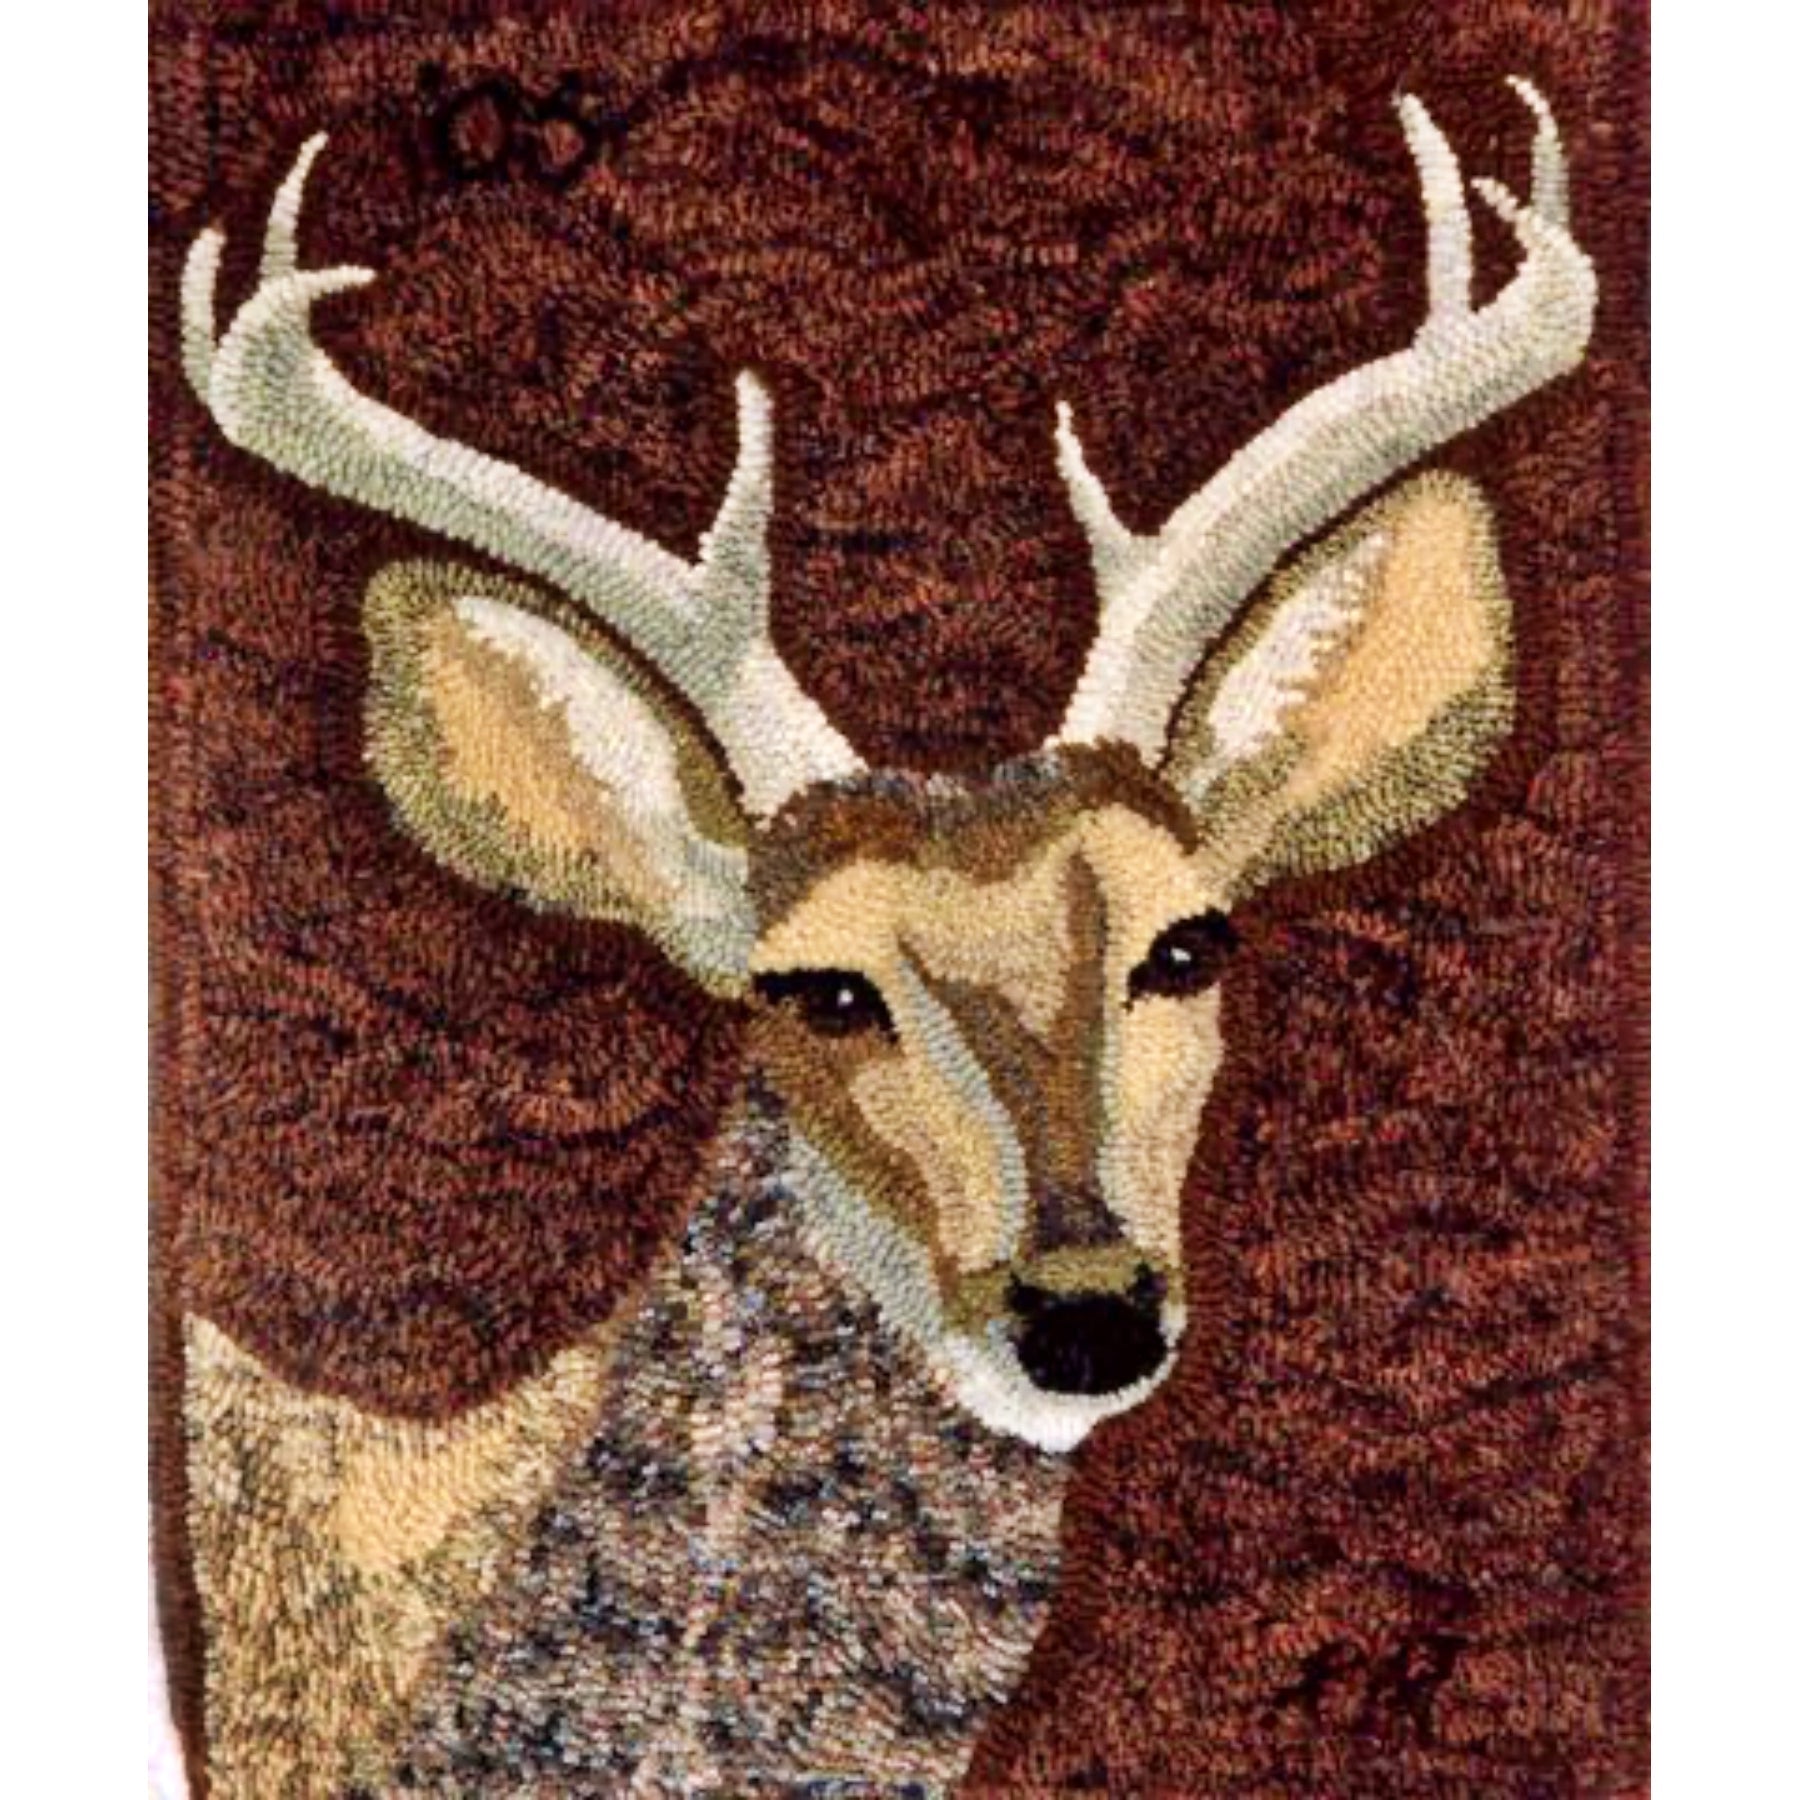 Deer, rug hooked by Karen Maddox